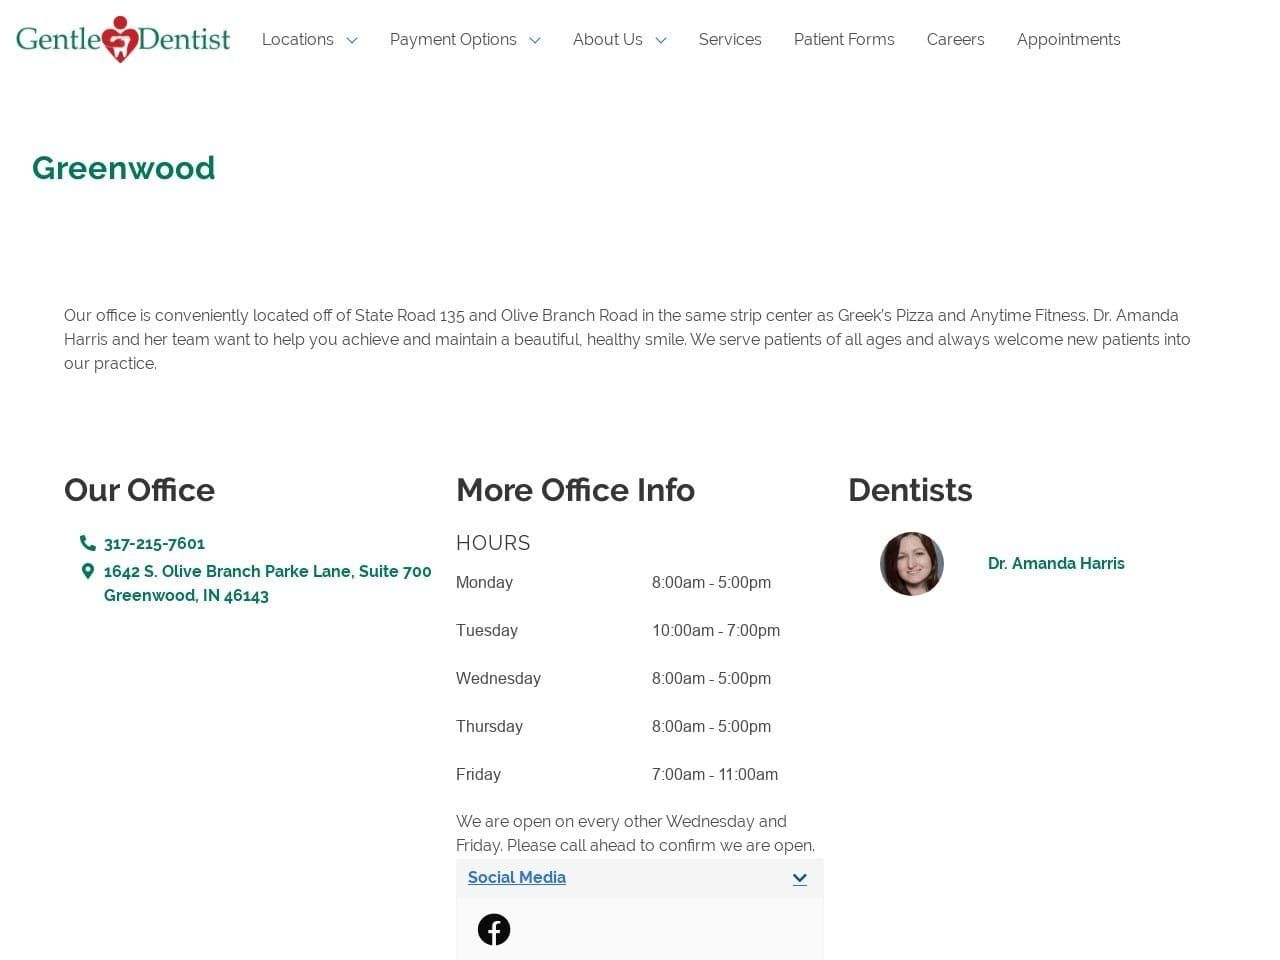 Gentle Dentist Website Screenshot from greenwoodgentledentist.com